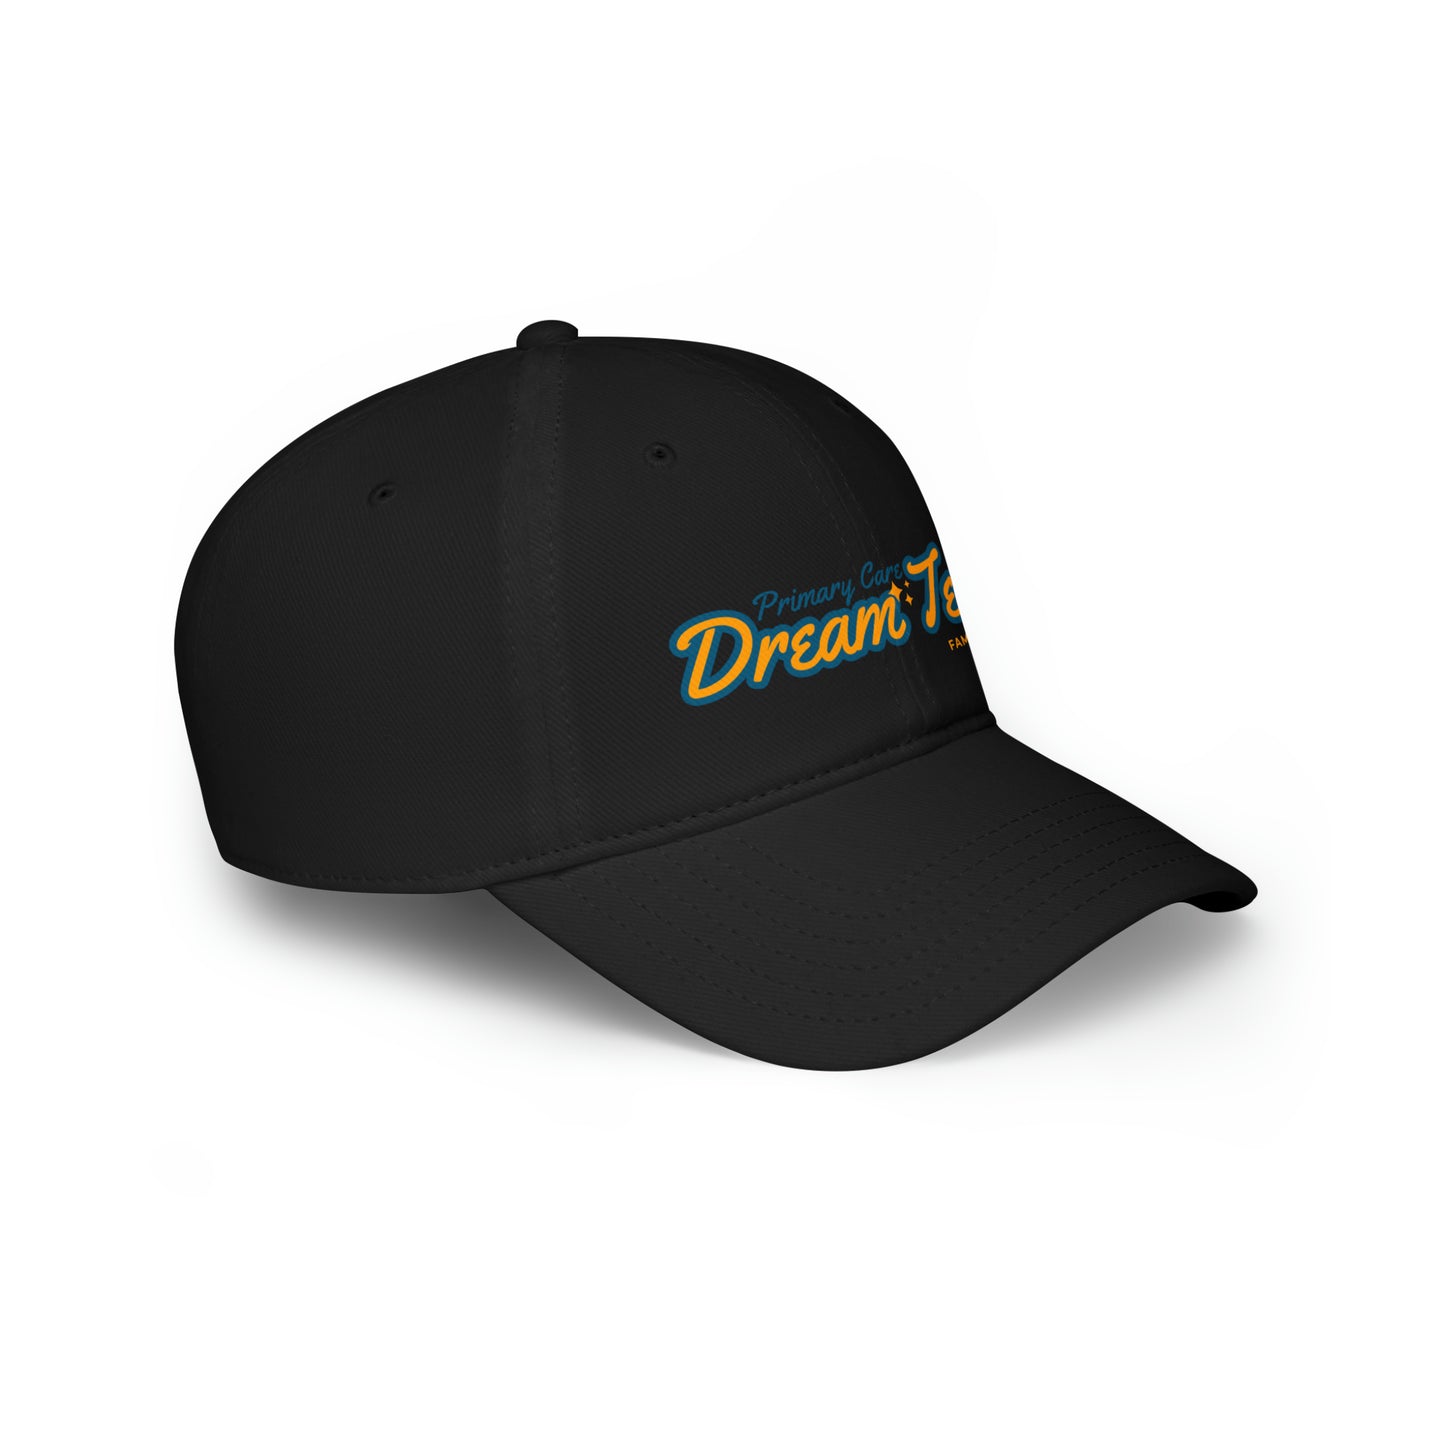 Primary Care Dream Team - Low Profile Baseball Cap